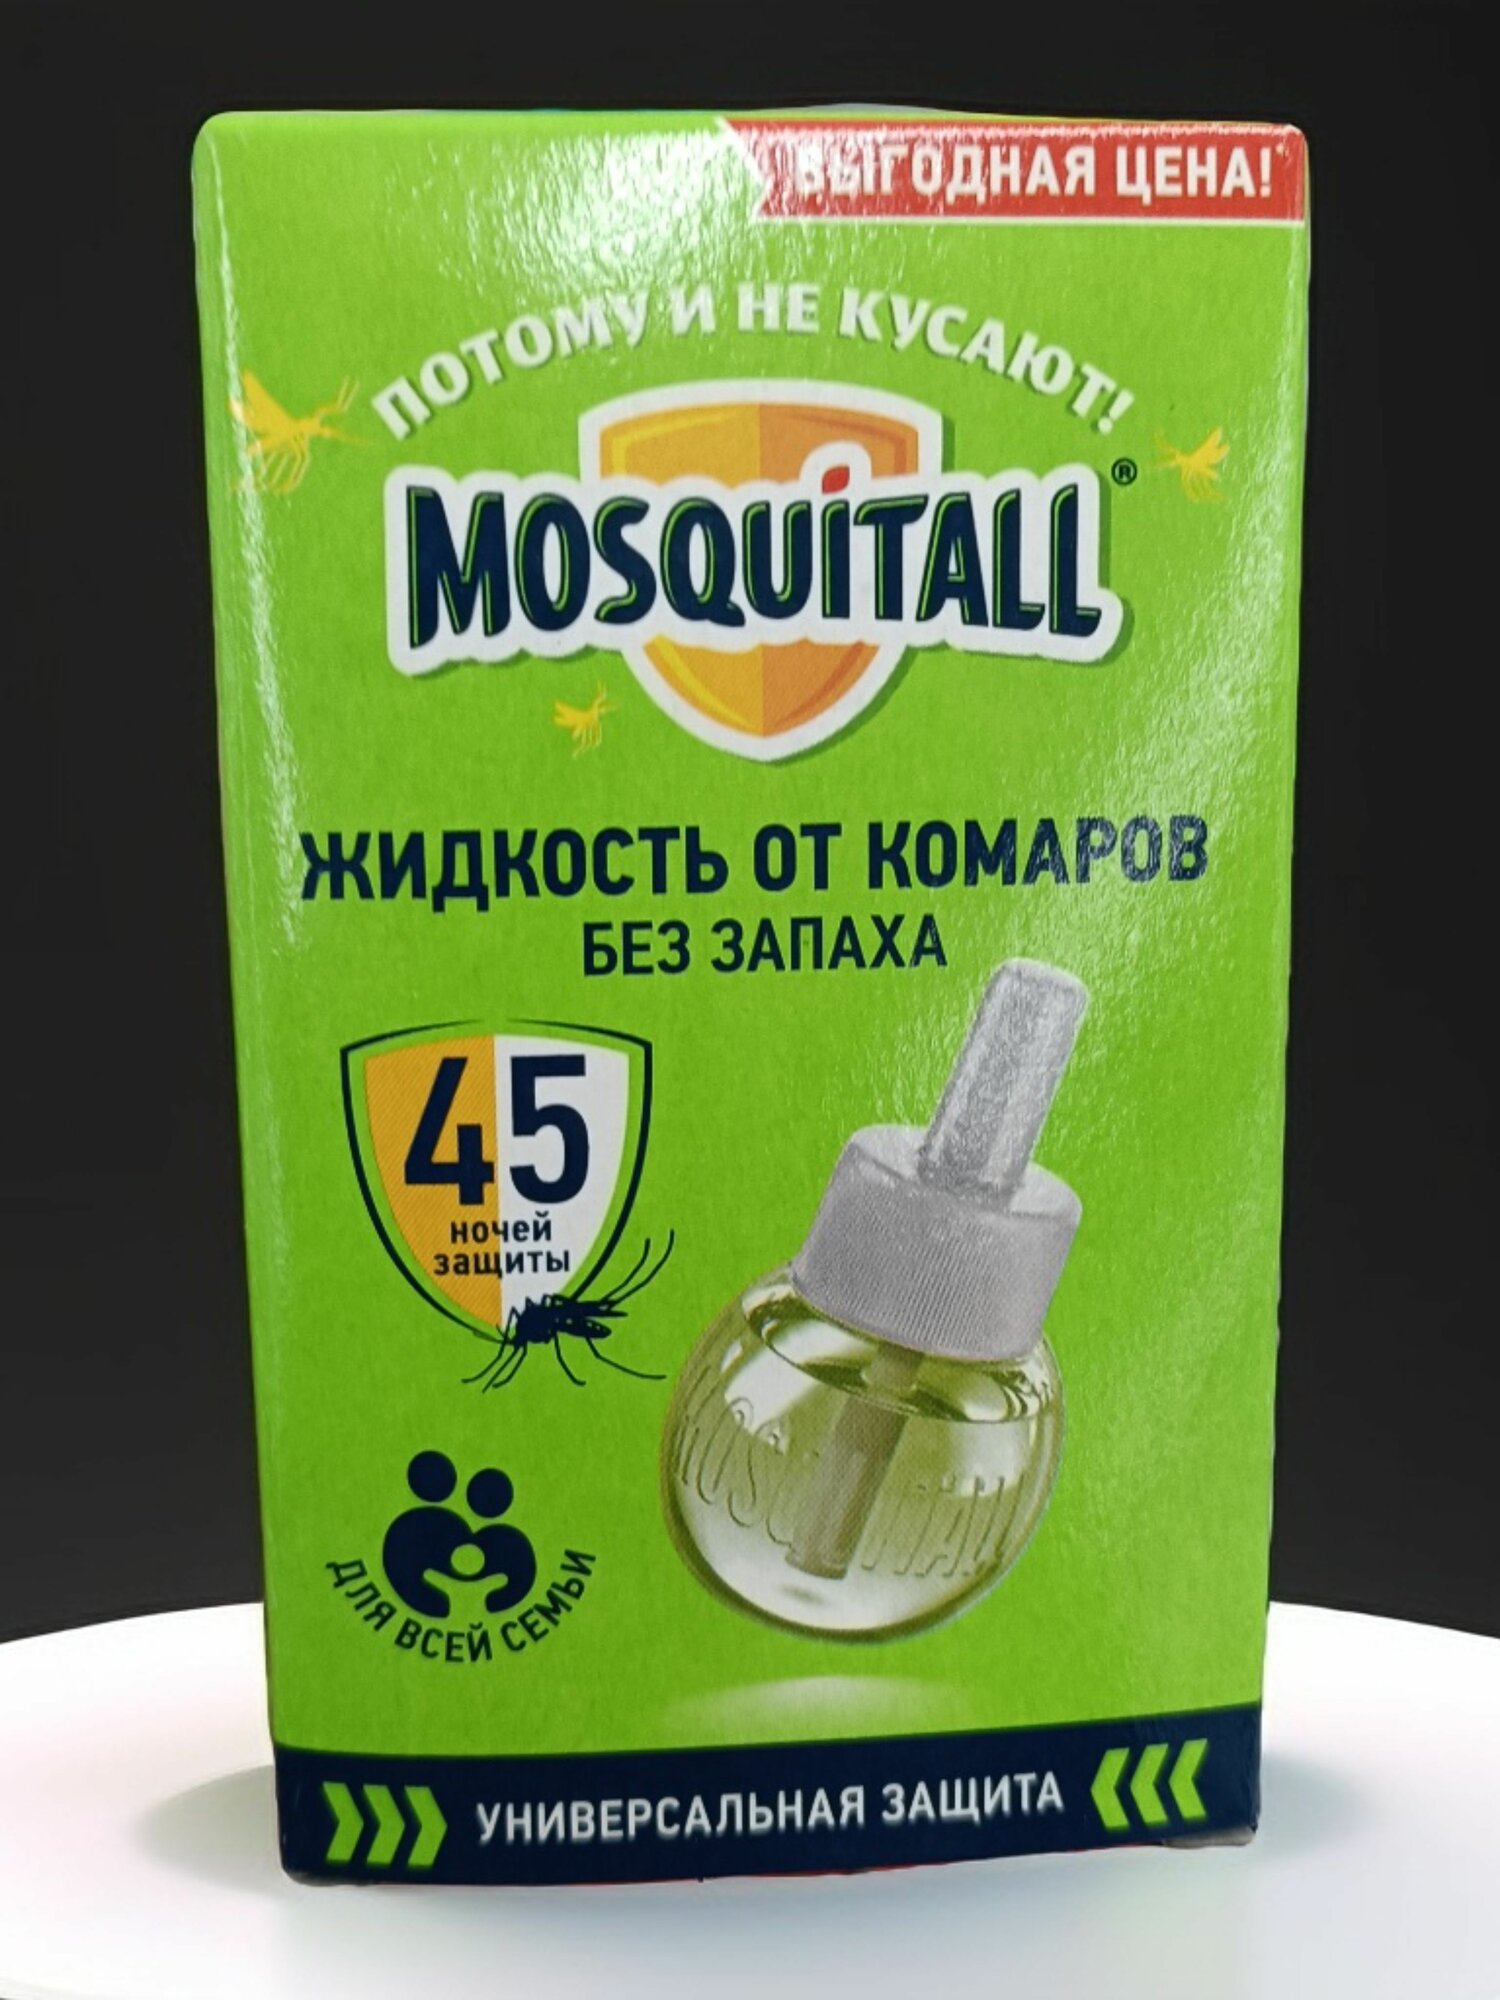 Жидкость от комаров Универсальная защита Москитол 45 ночей, 30 мл - 1 шт